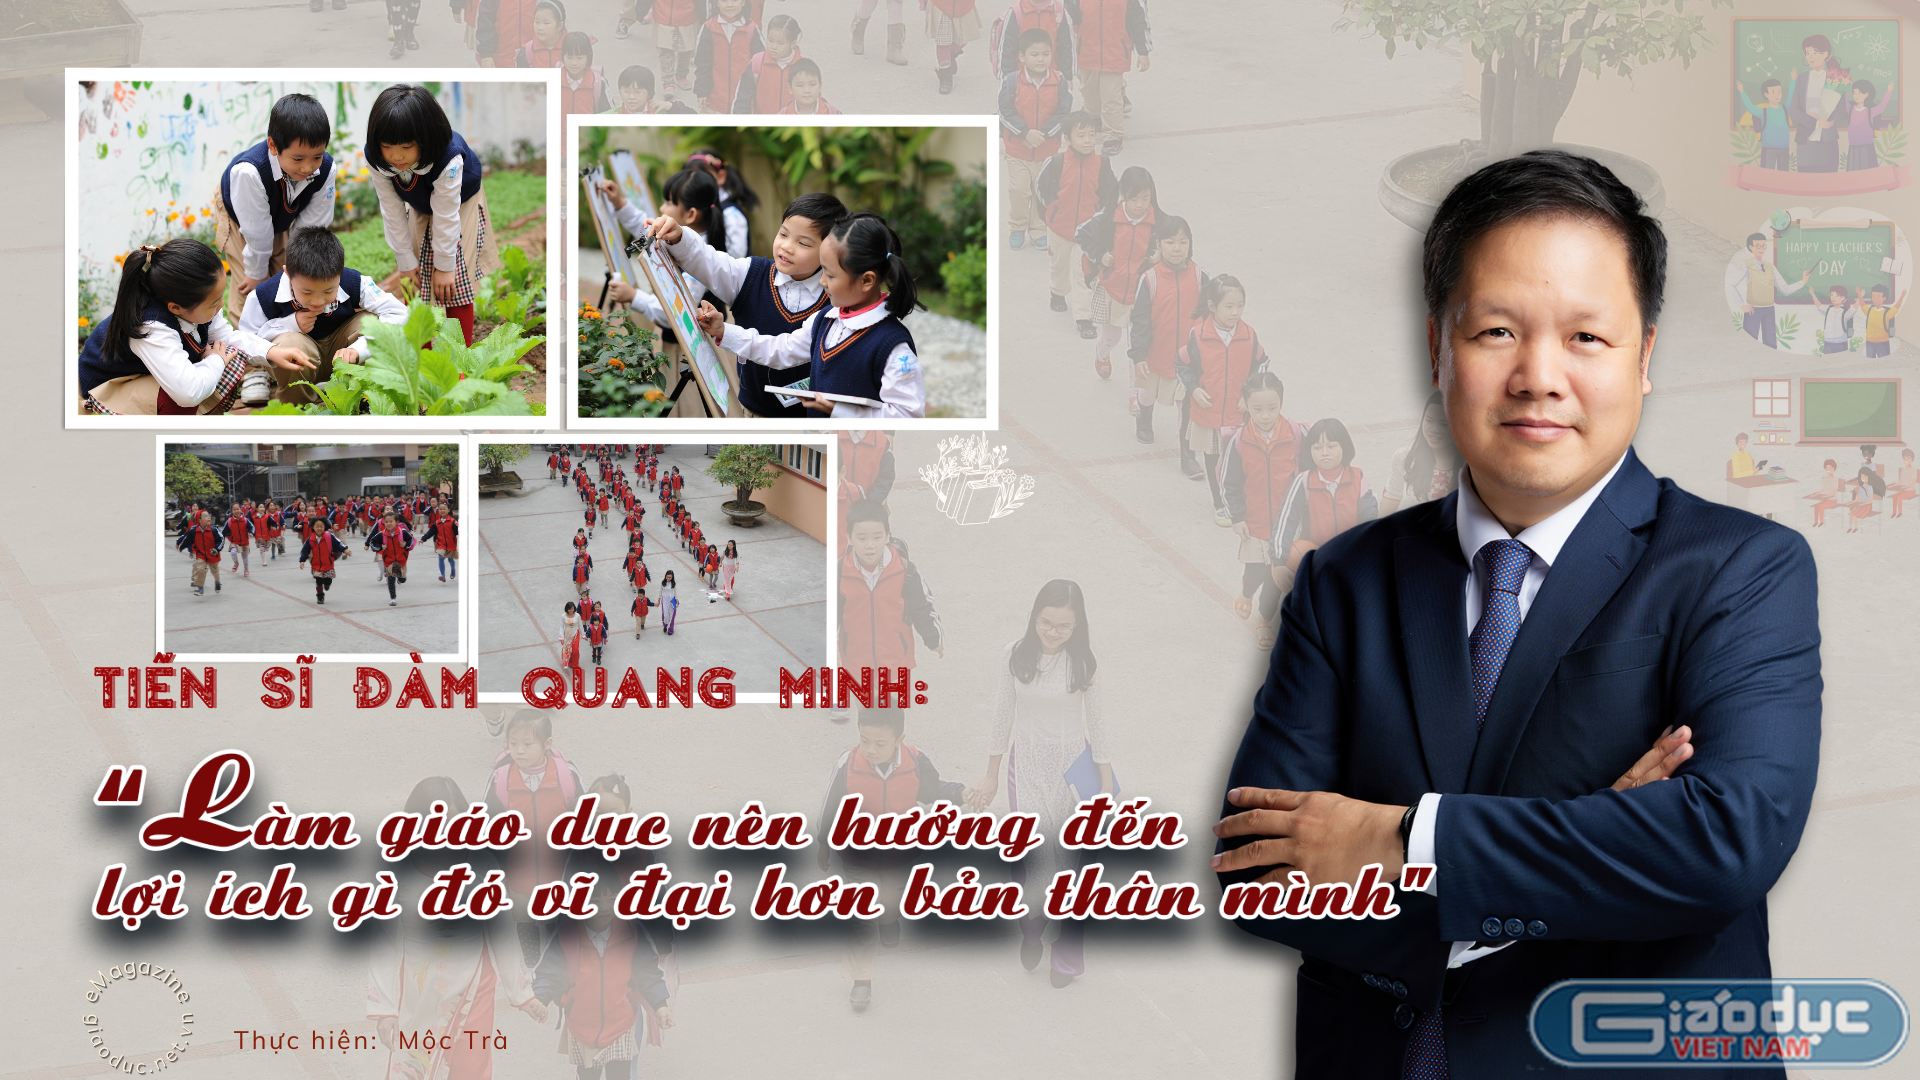 TS Đàm Quang Minh: Làm giáo dục nên hướng đến lợi ích vĩ đại hơn bản thân mình